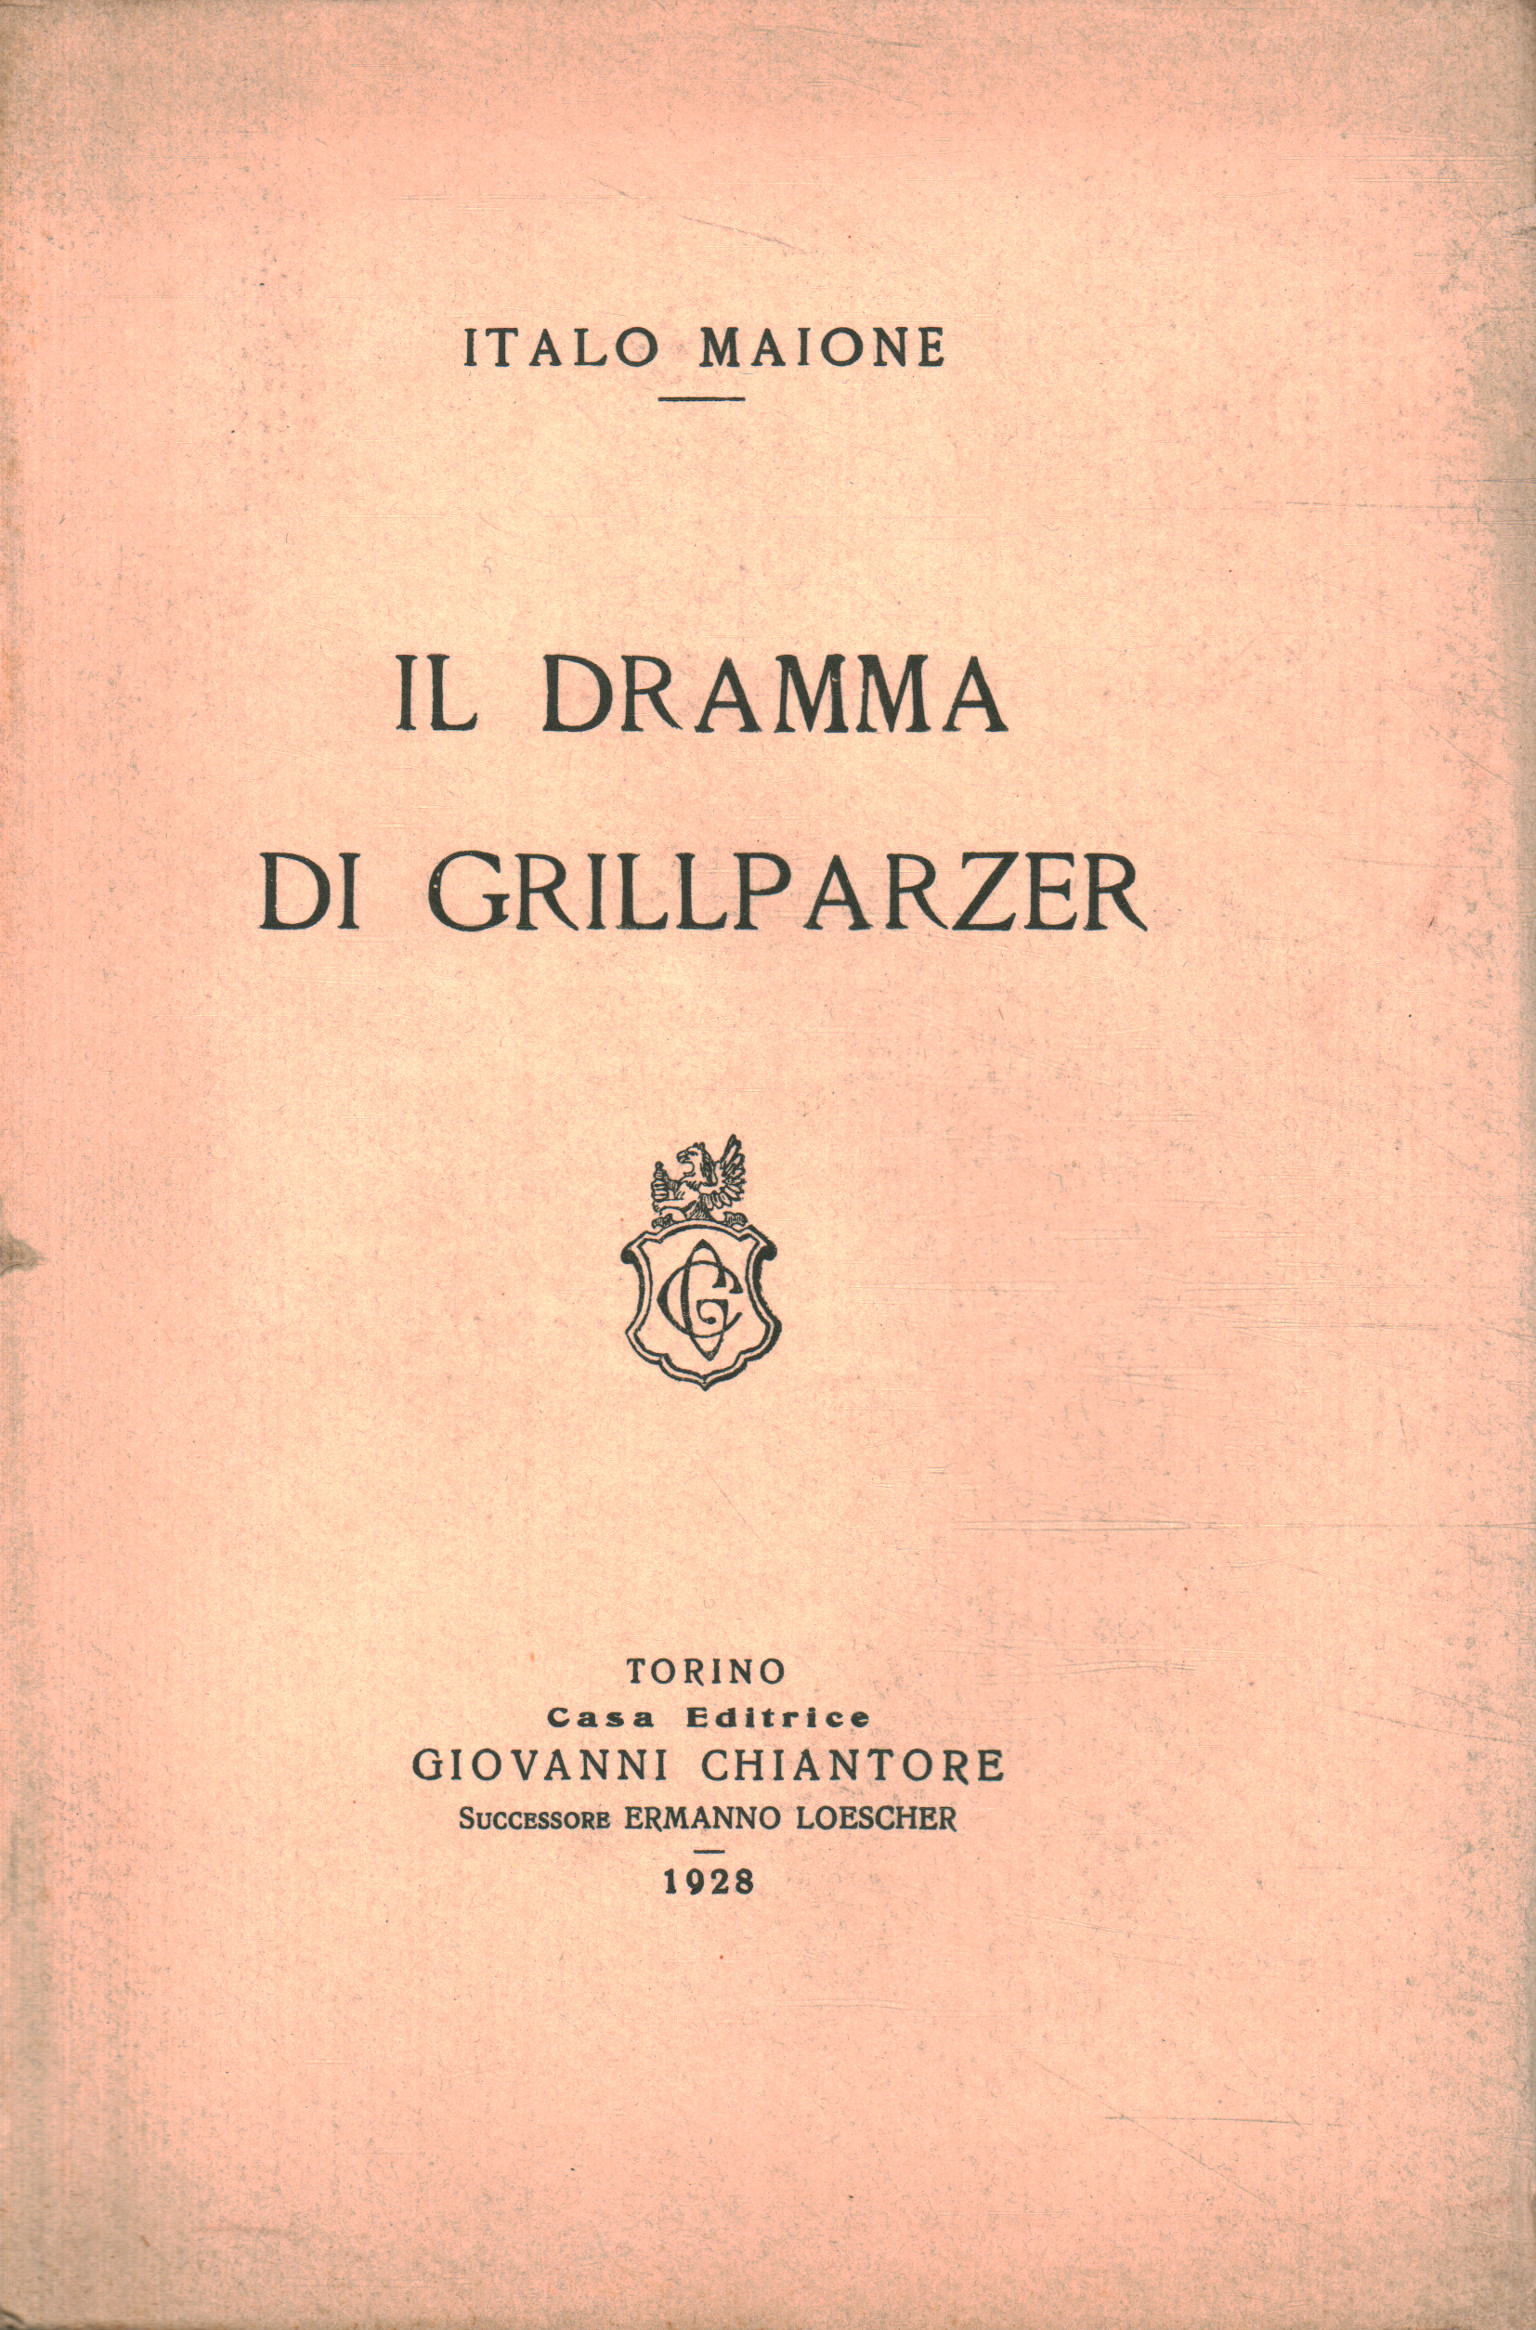 Grillparzer's drama